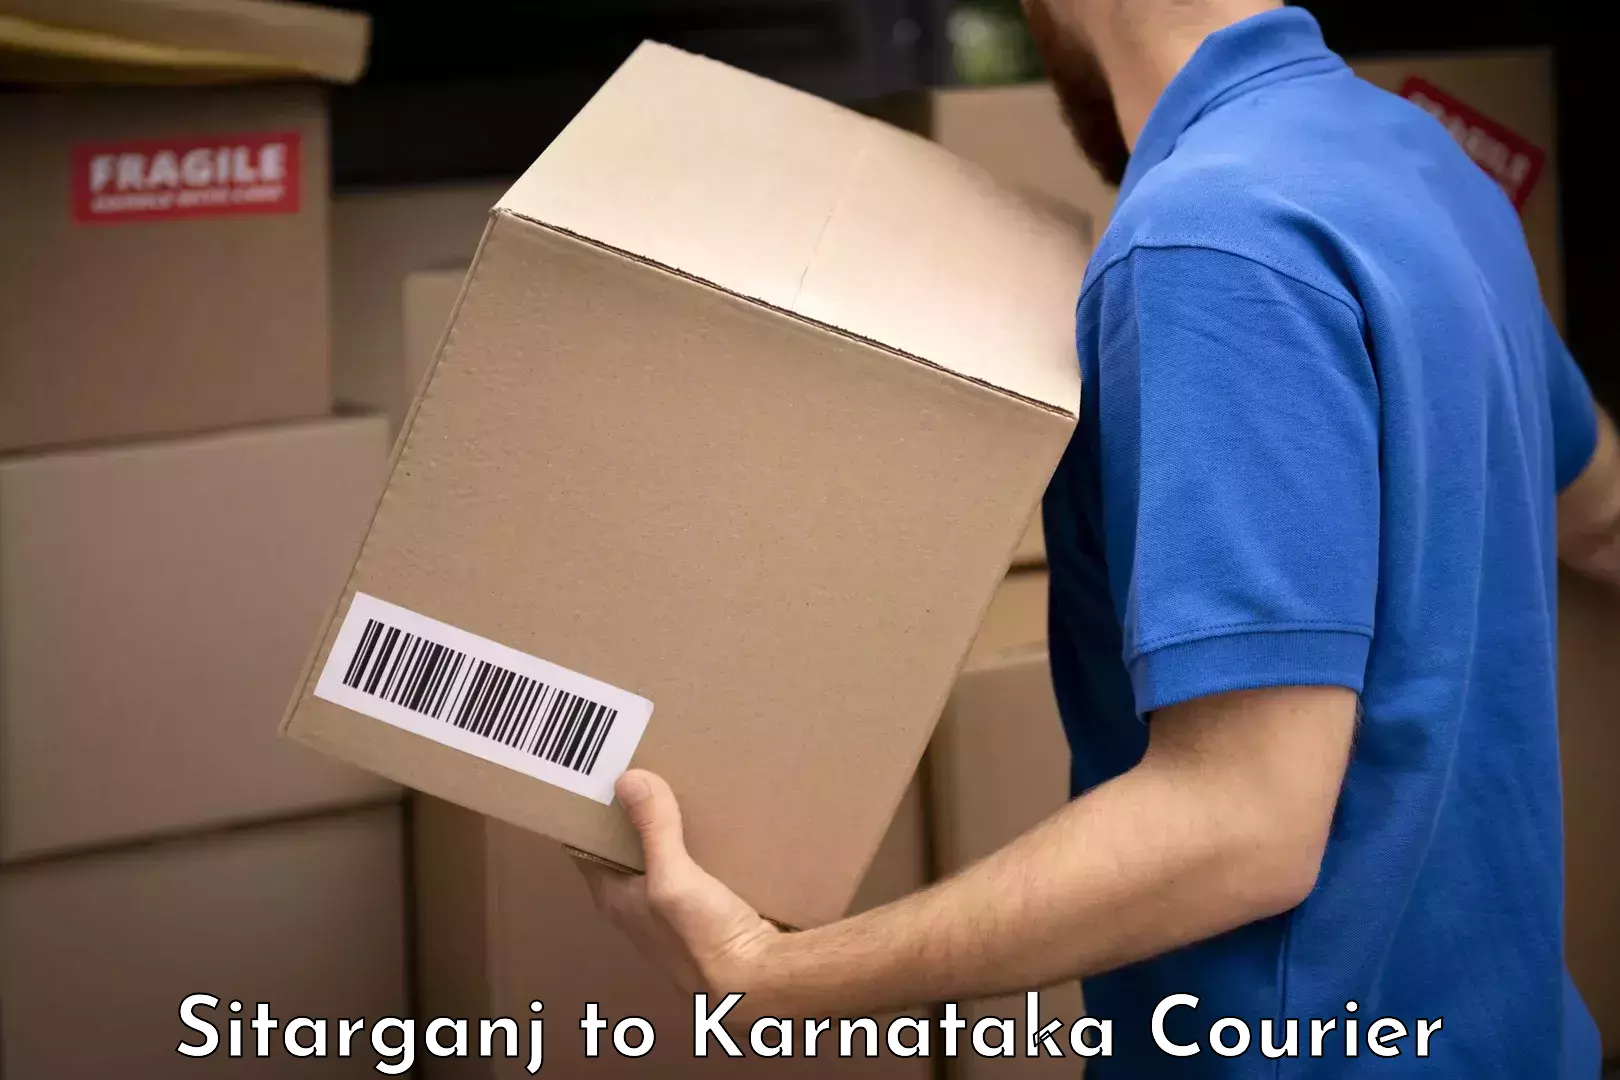 Baggage transport scheduler Sitarganj to Karnataka